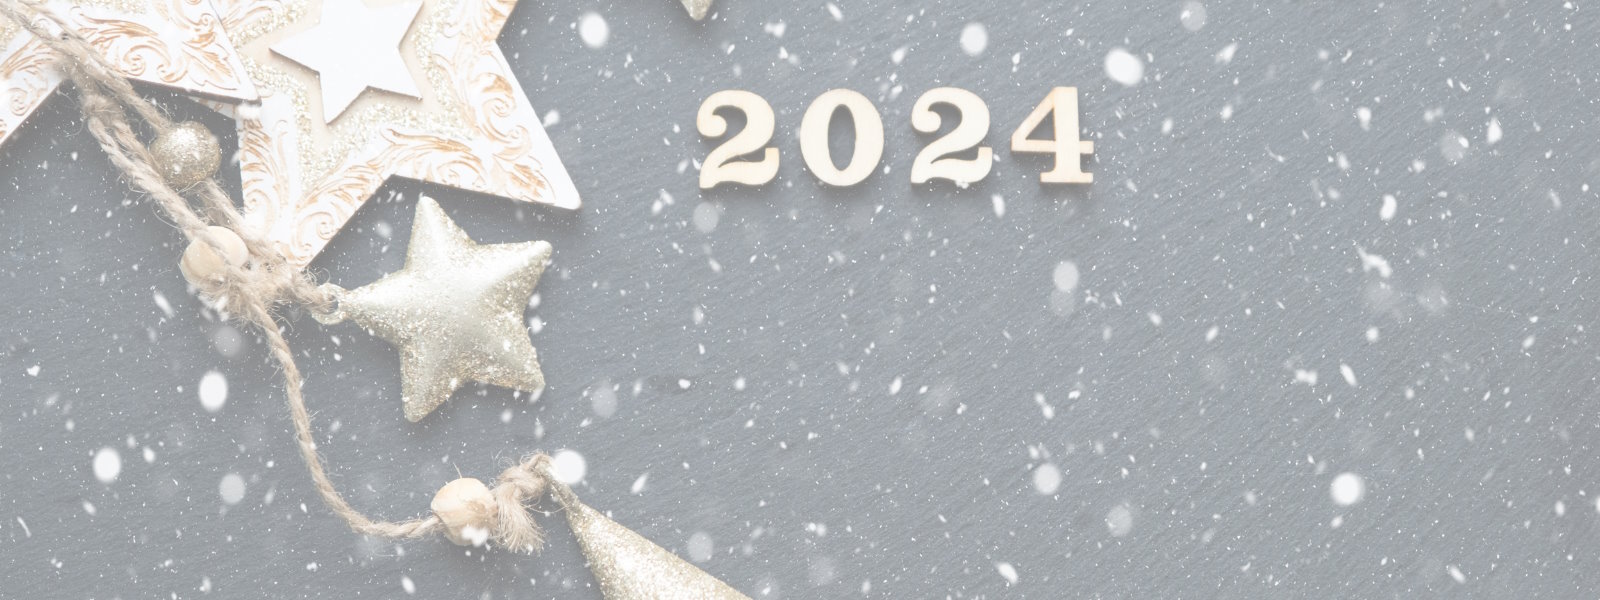 Гороскоп 2024: Прогноз на год по знакам зодиака